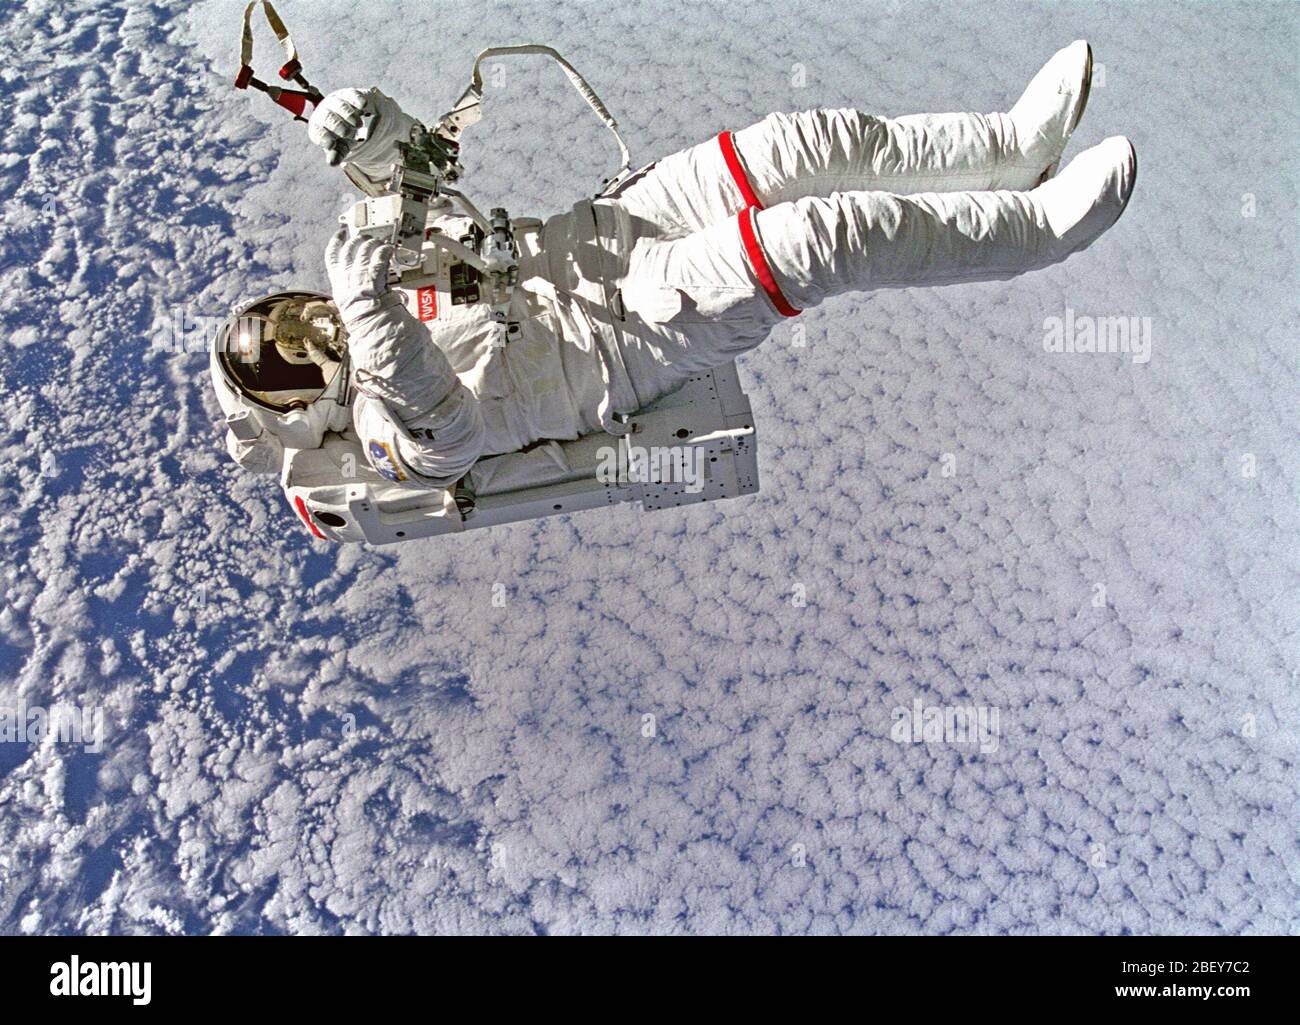 Gegen Wolken 130 nautische Meilen unterhalb Backdropped, Astronaut Mark C. Lee schwebt frei ohne anbindehaltung, als er testet die neue vereinfachte Hilfen für EVA Rescue (sicherere) System. Stockfoto